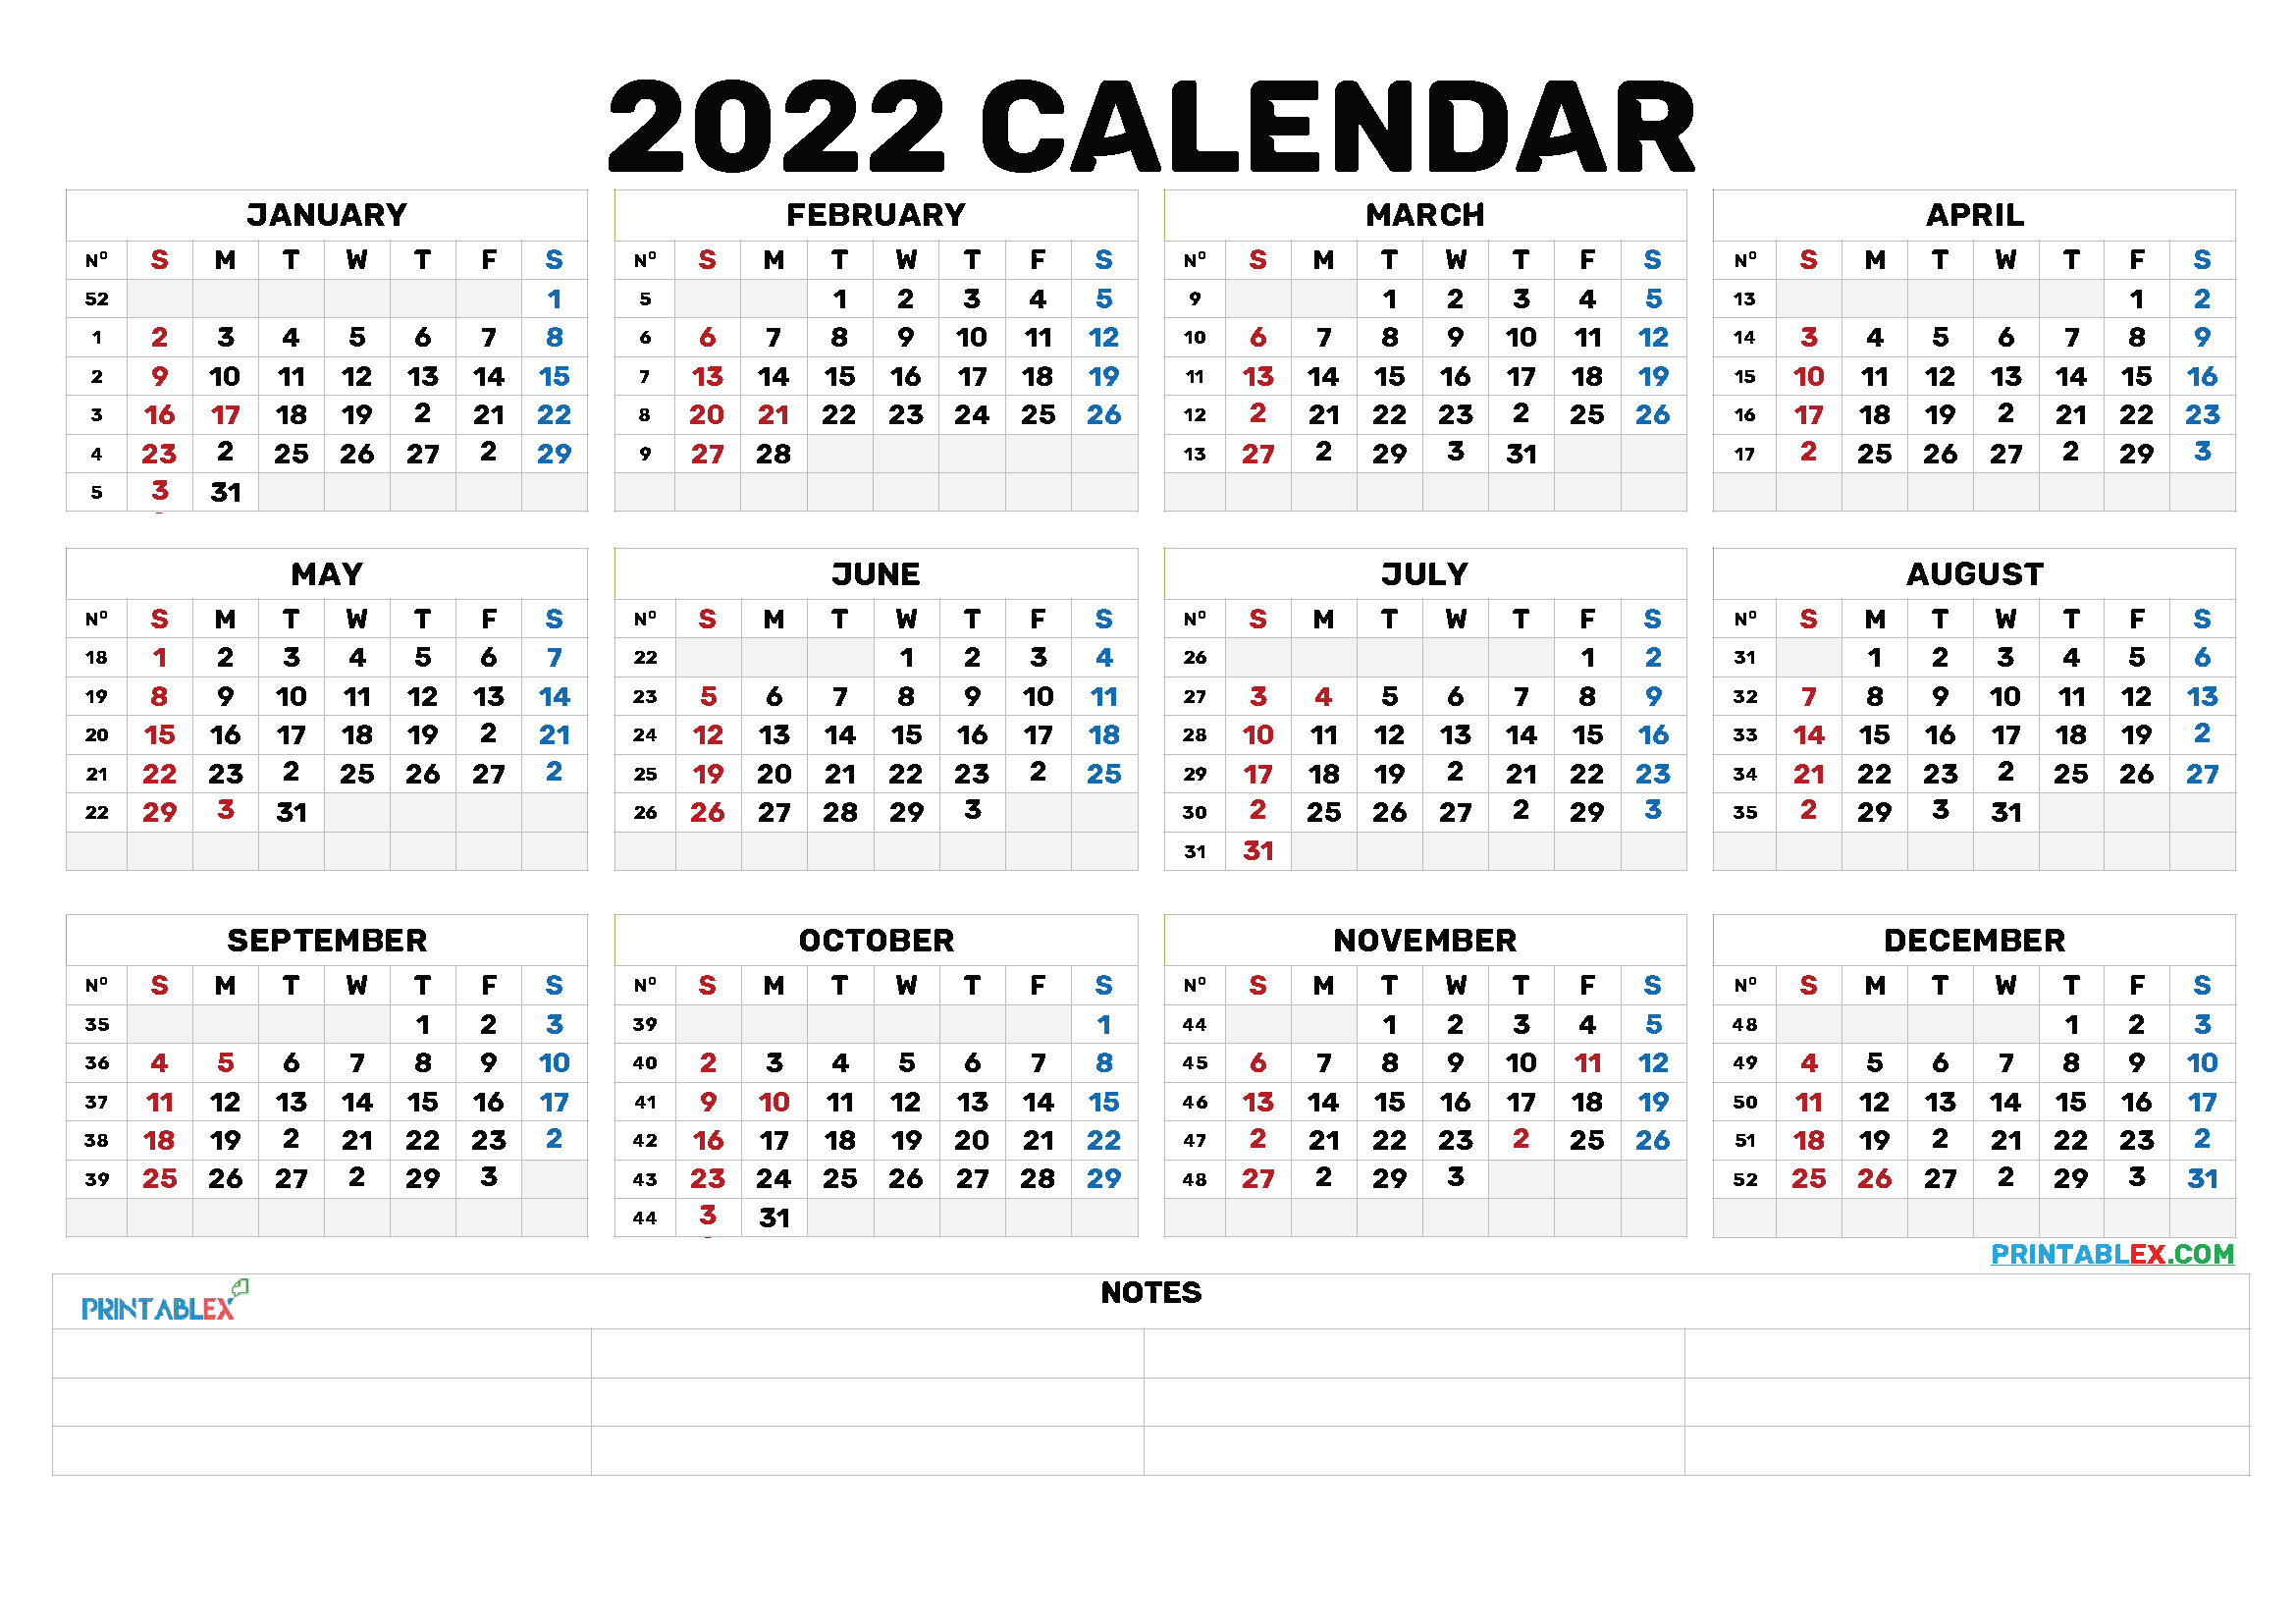 2022 Annual Calendar Printable 22ytw173